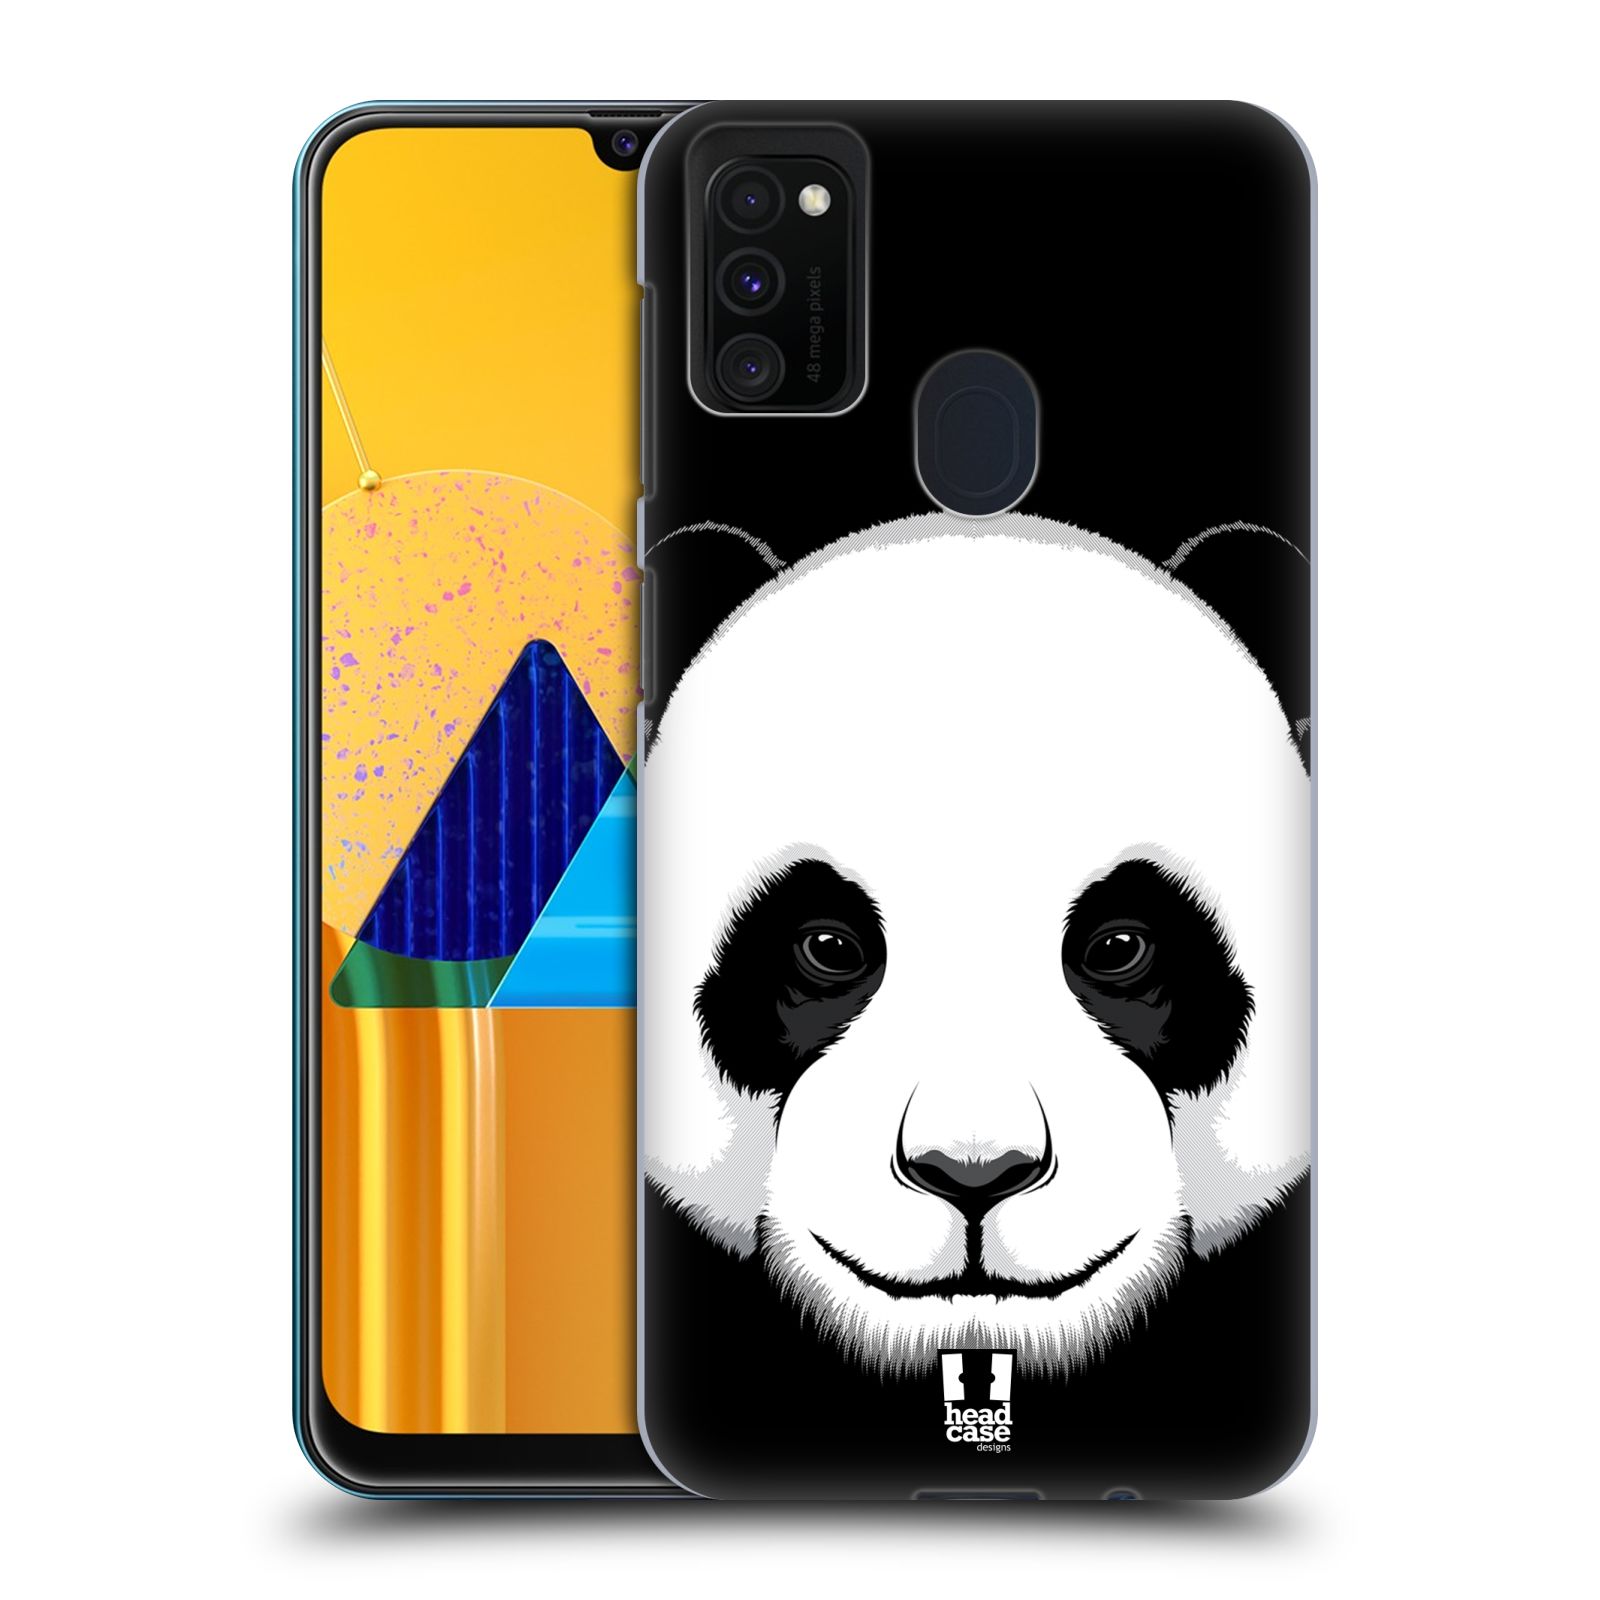 Plastový obal HEAD CASE na mobil Samsung Galaxy M30s vzor Zvíře kreslená tvář panda